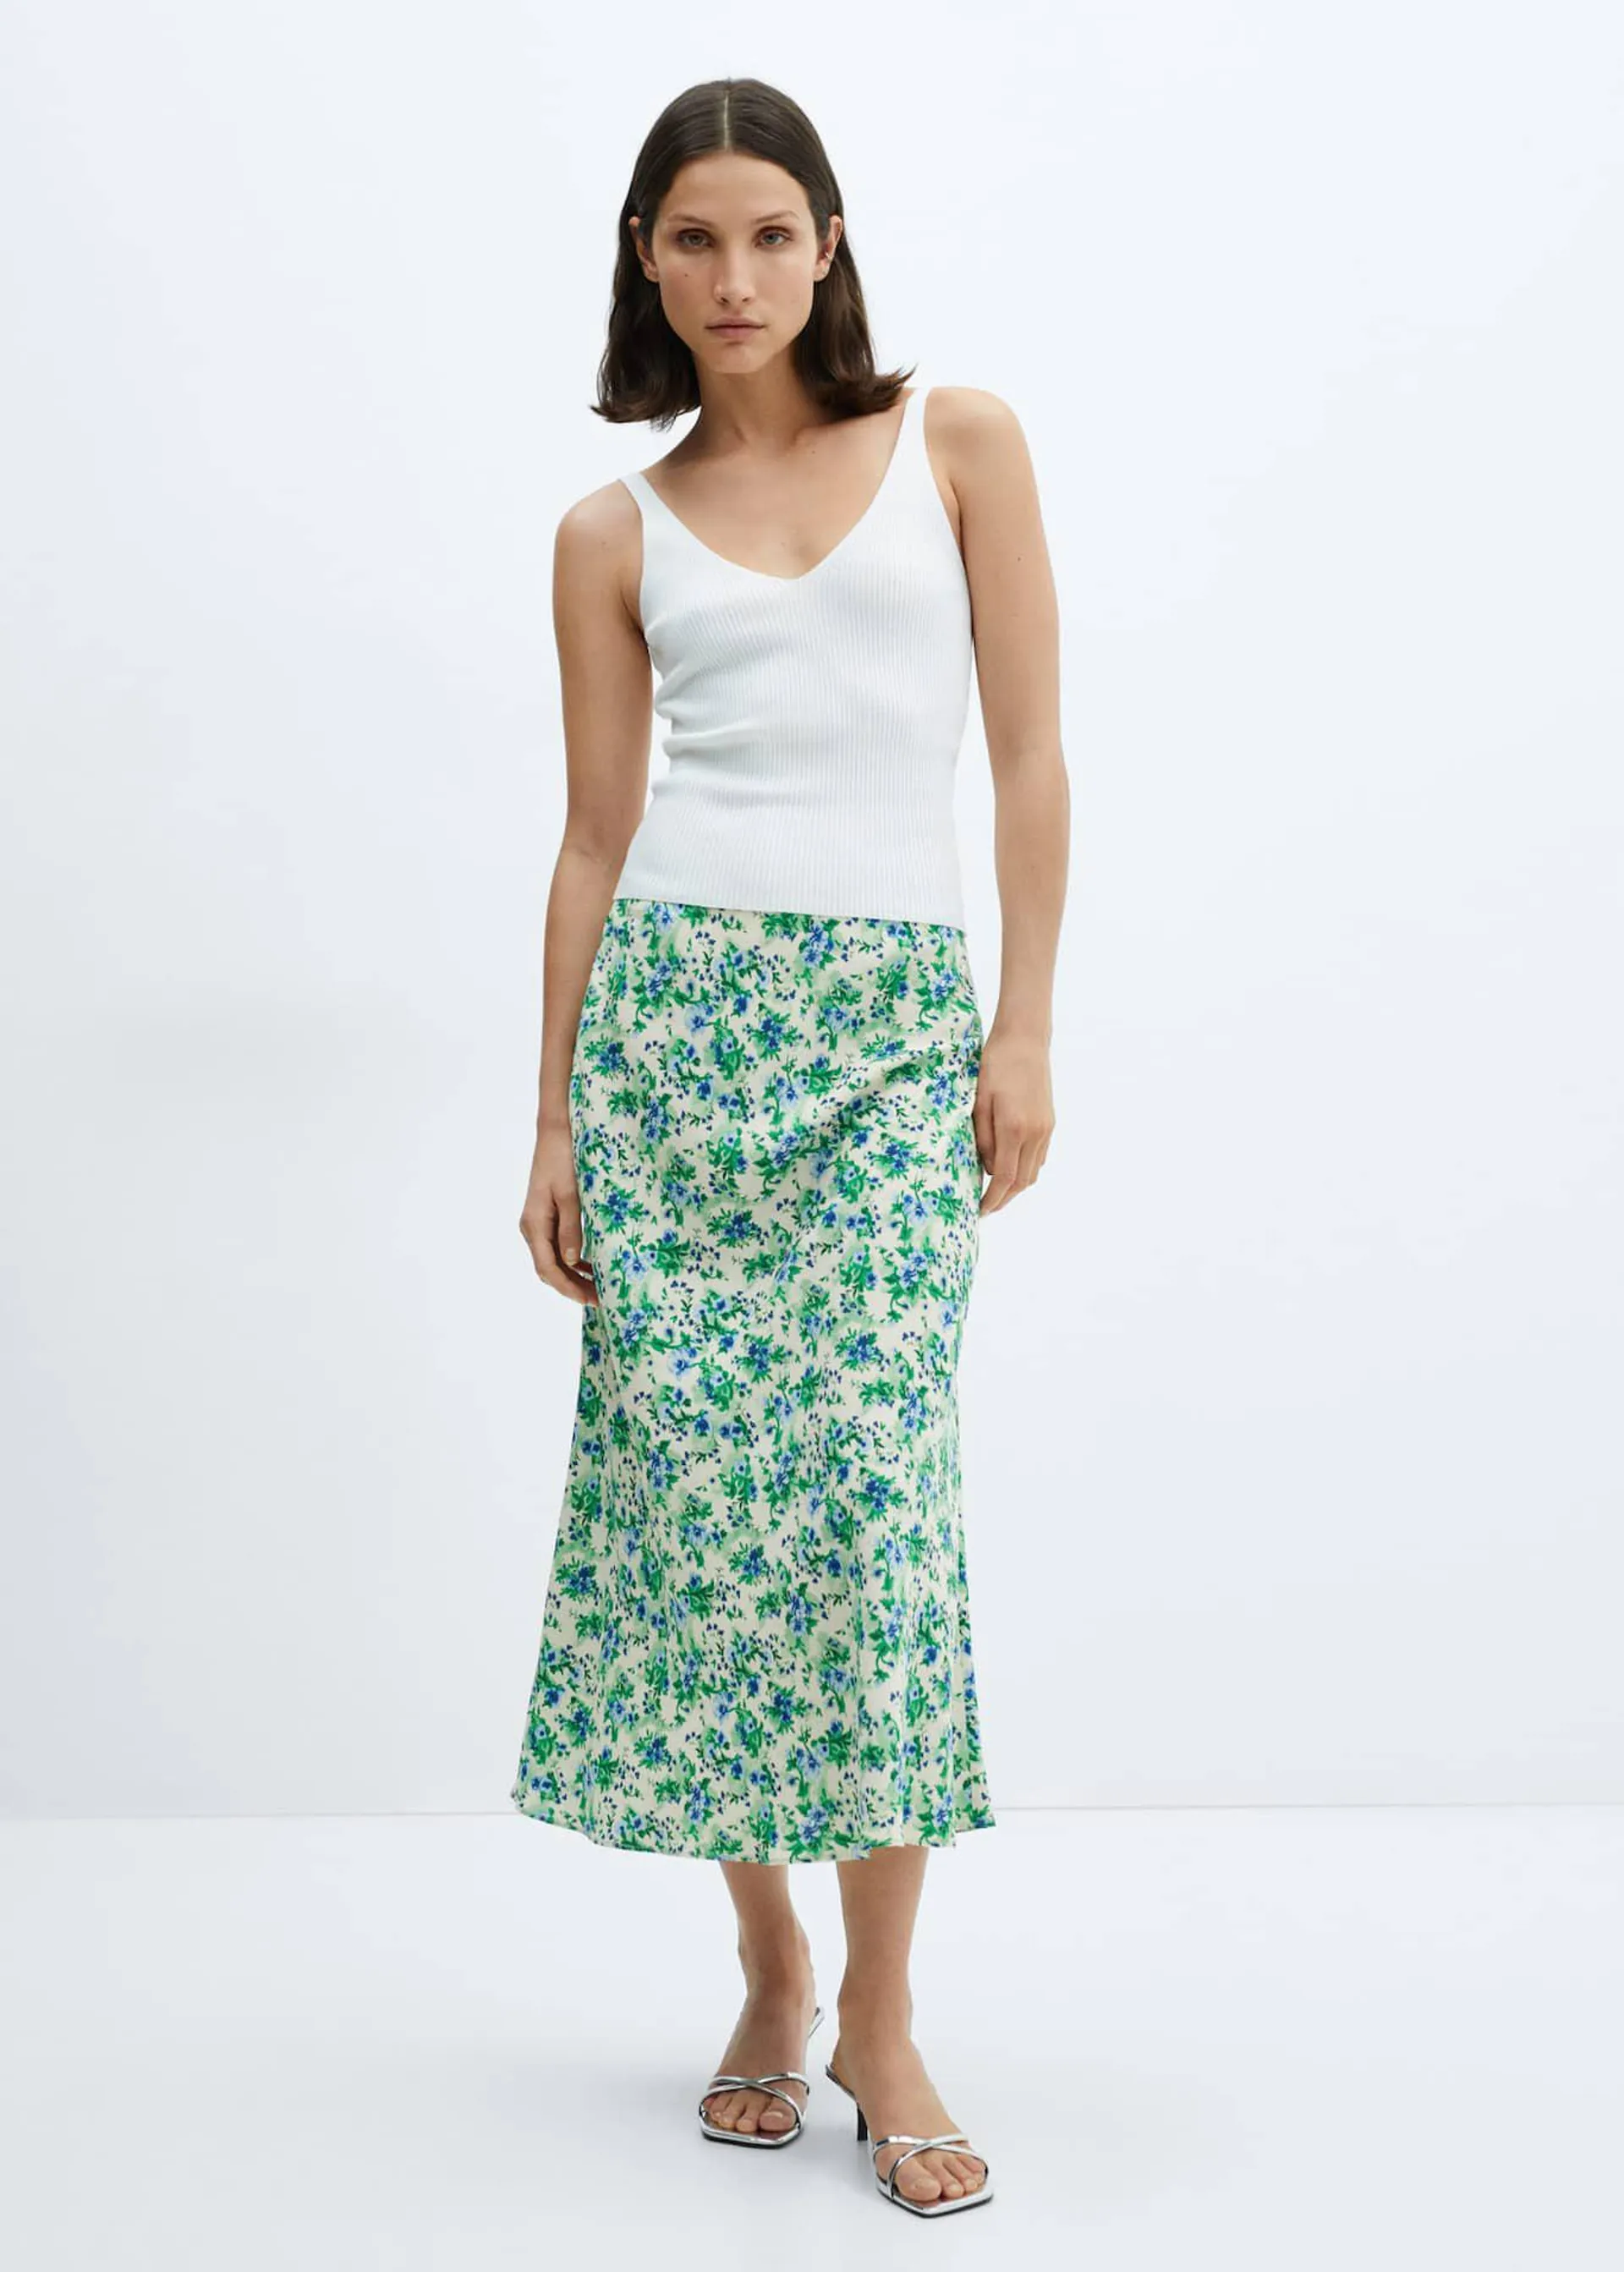 Printed satin skirt